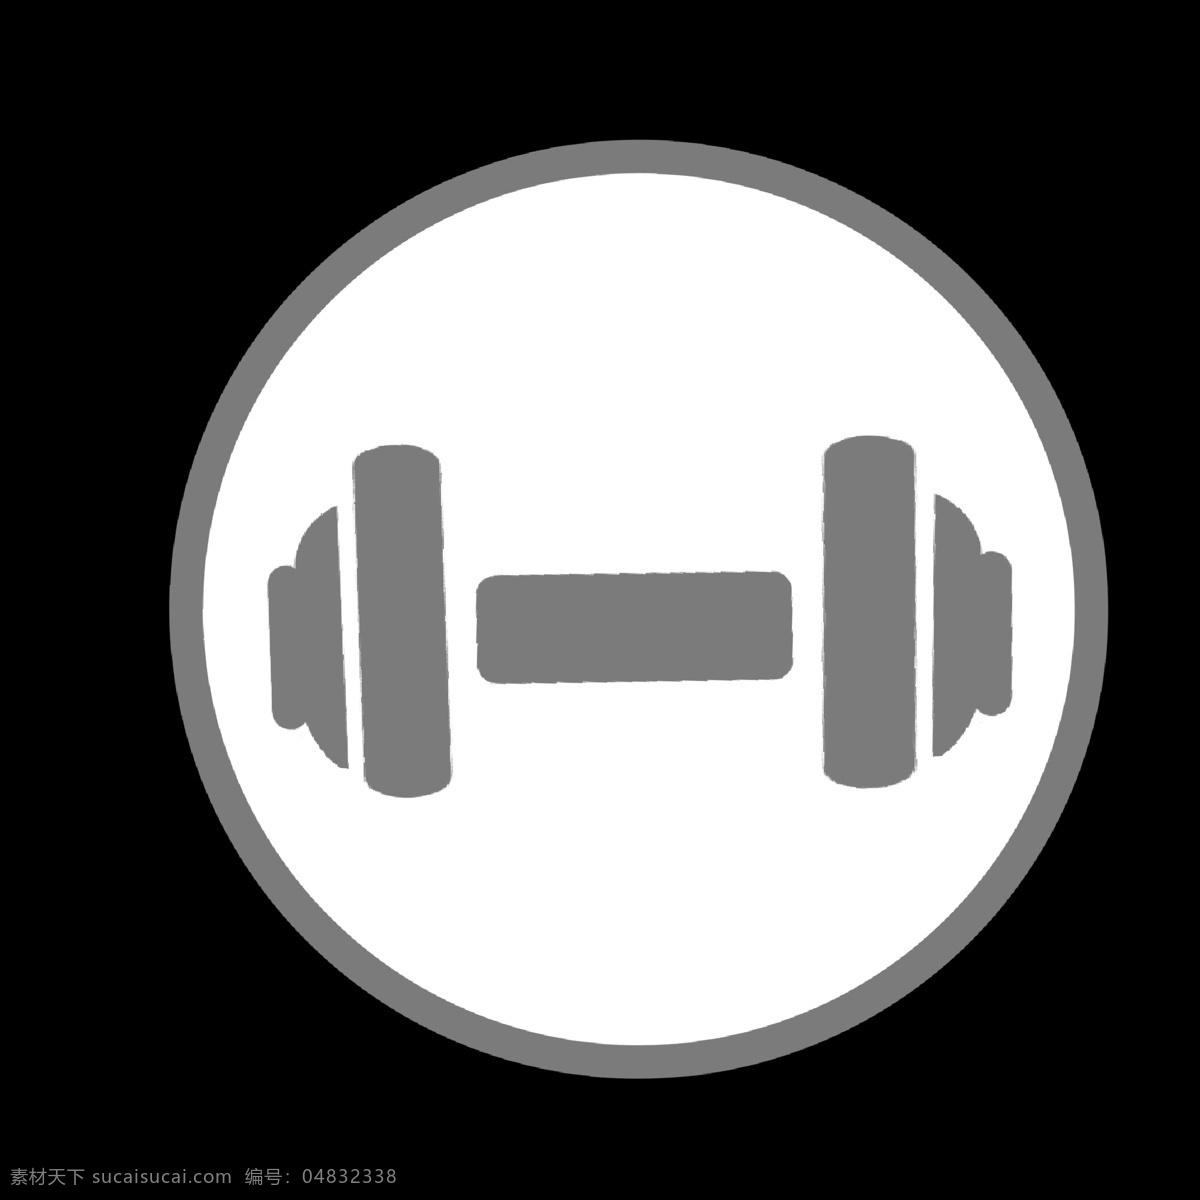 灰色 举重 健身 图标 举重器材 健身房 锻炼身体 增强体质 健身场所专用 公共 设施 矢量图 简洁 卡通 公共场所 专用 图案